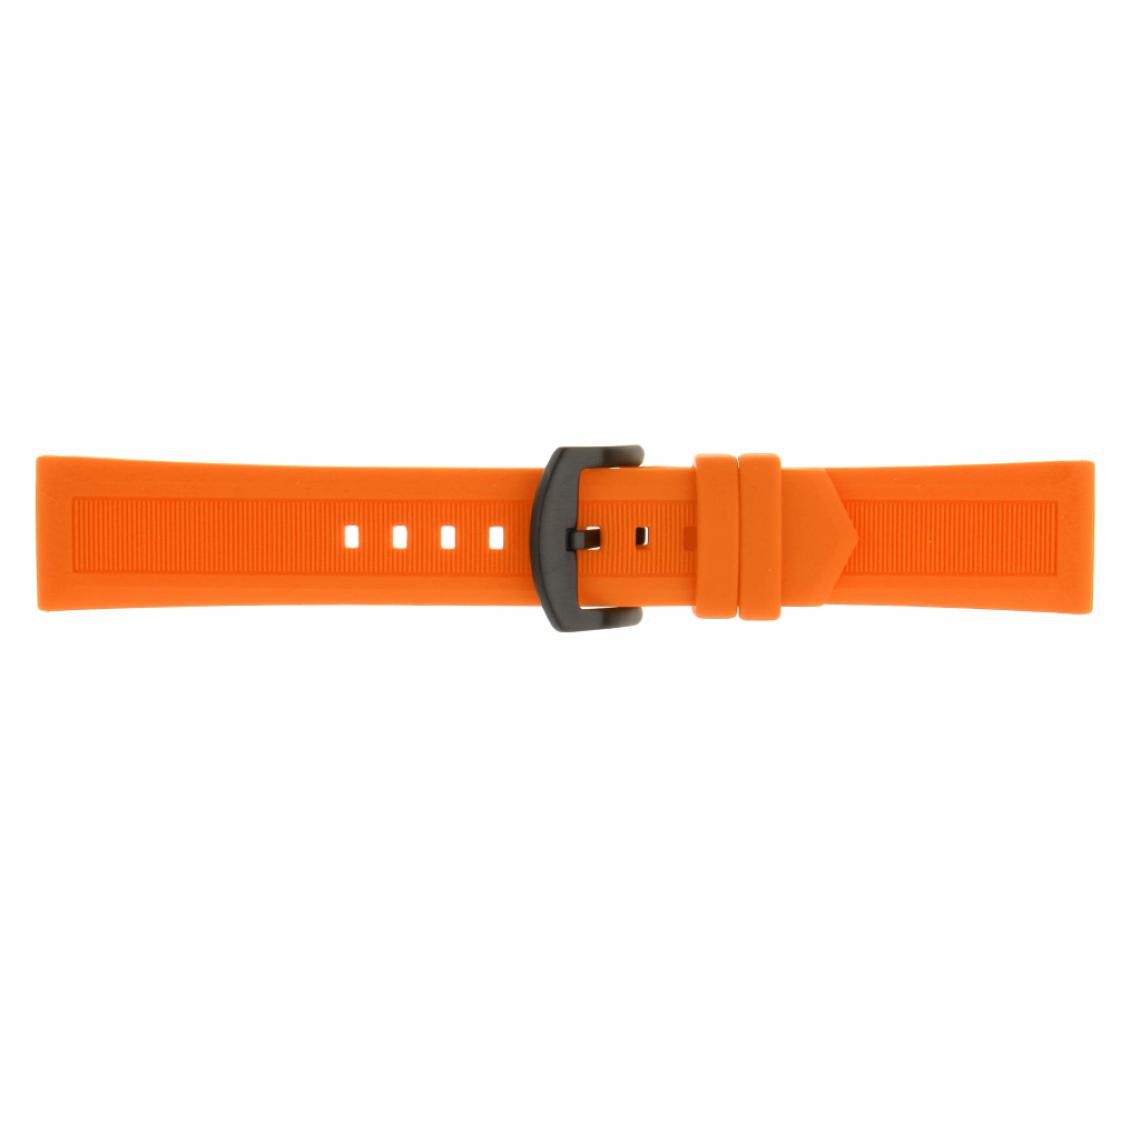 marque generique - Sport de qualité supérieure en caoutchouc de silicone orange pour remplacer la bande de bracelet 20mm - Accessoires montres connectées